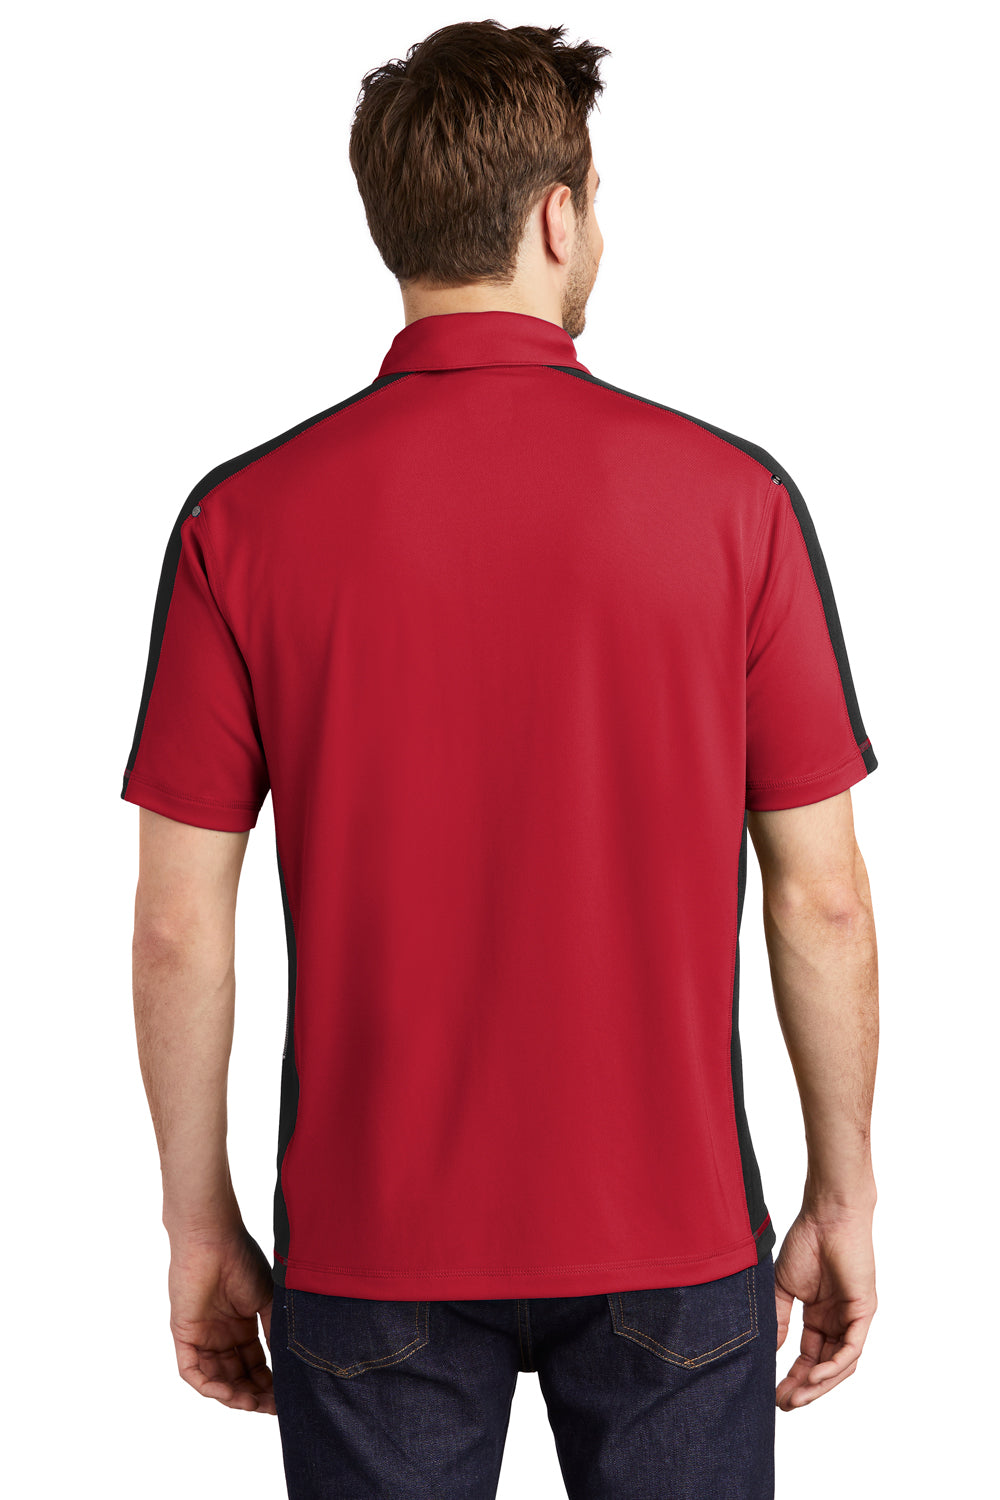 Ogio OG106 Mens Trax Moisture Wicking Short Sleeve Polo Shirt Red/Black Back